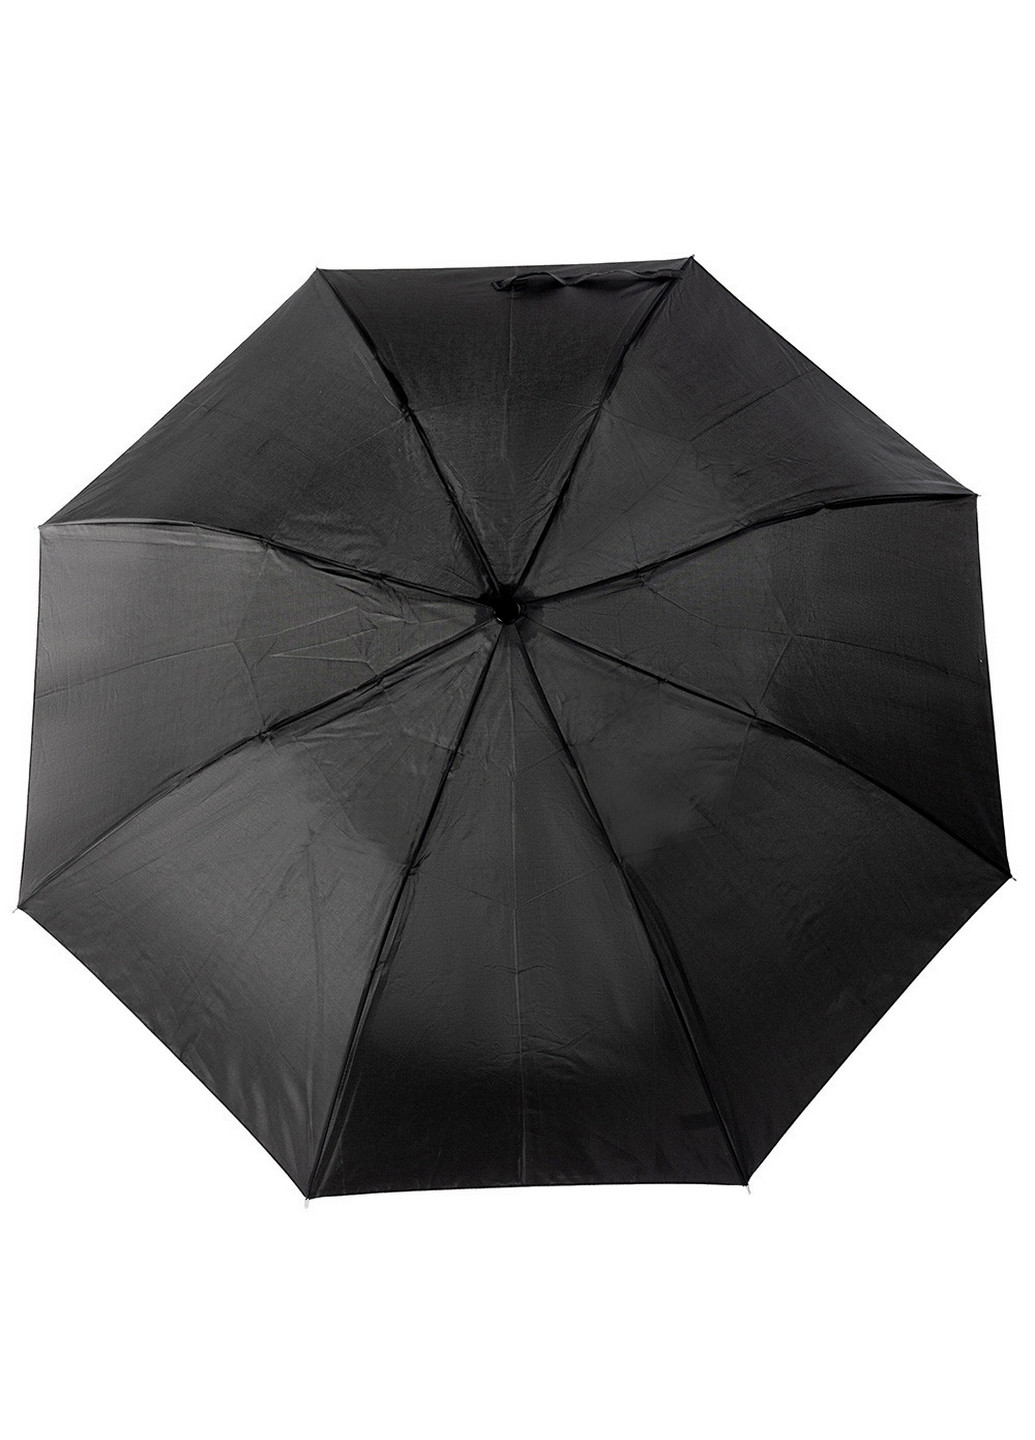 Мужской складной зонт механический 93 см Incognito (260330412)